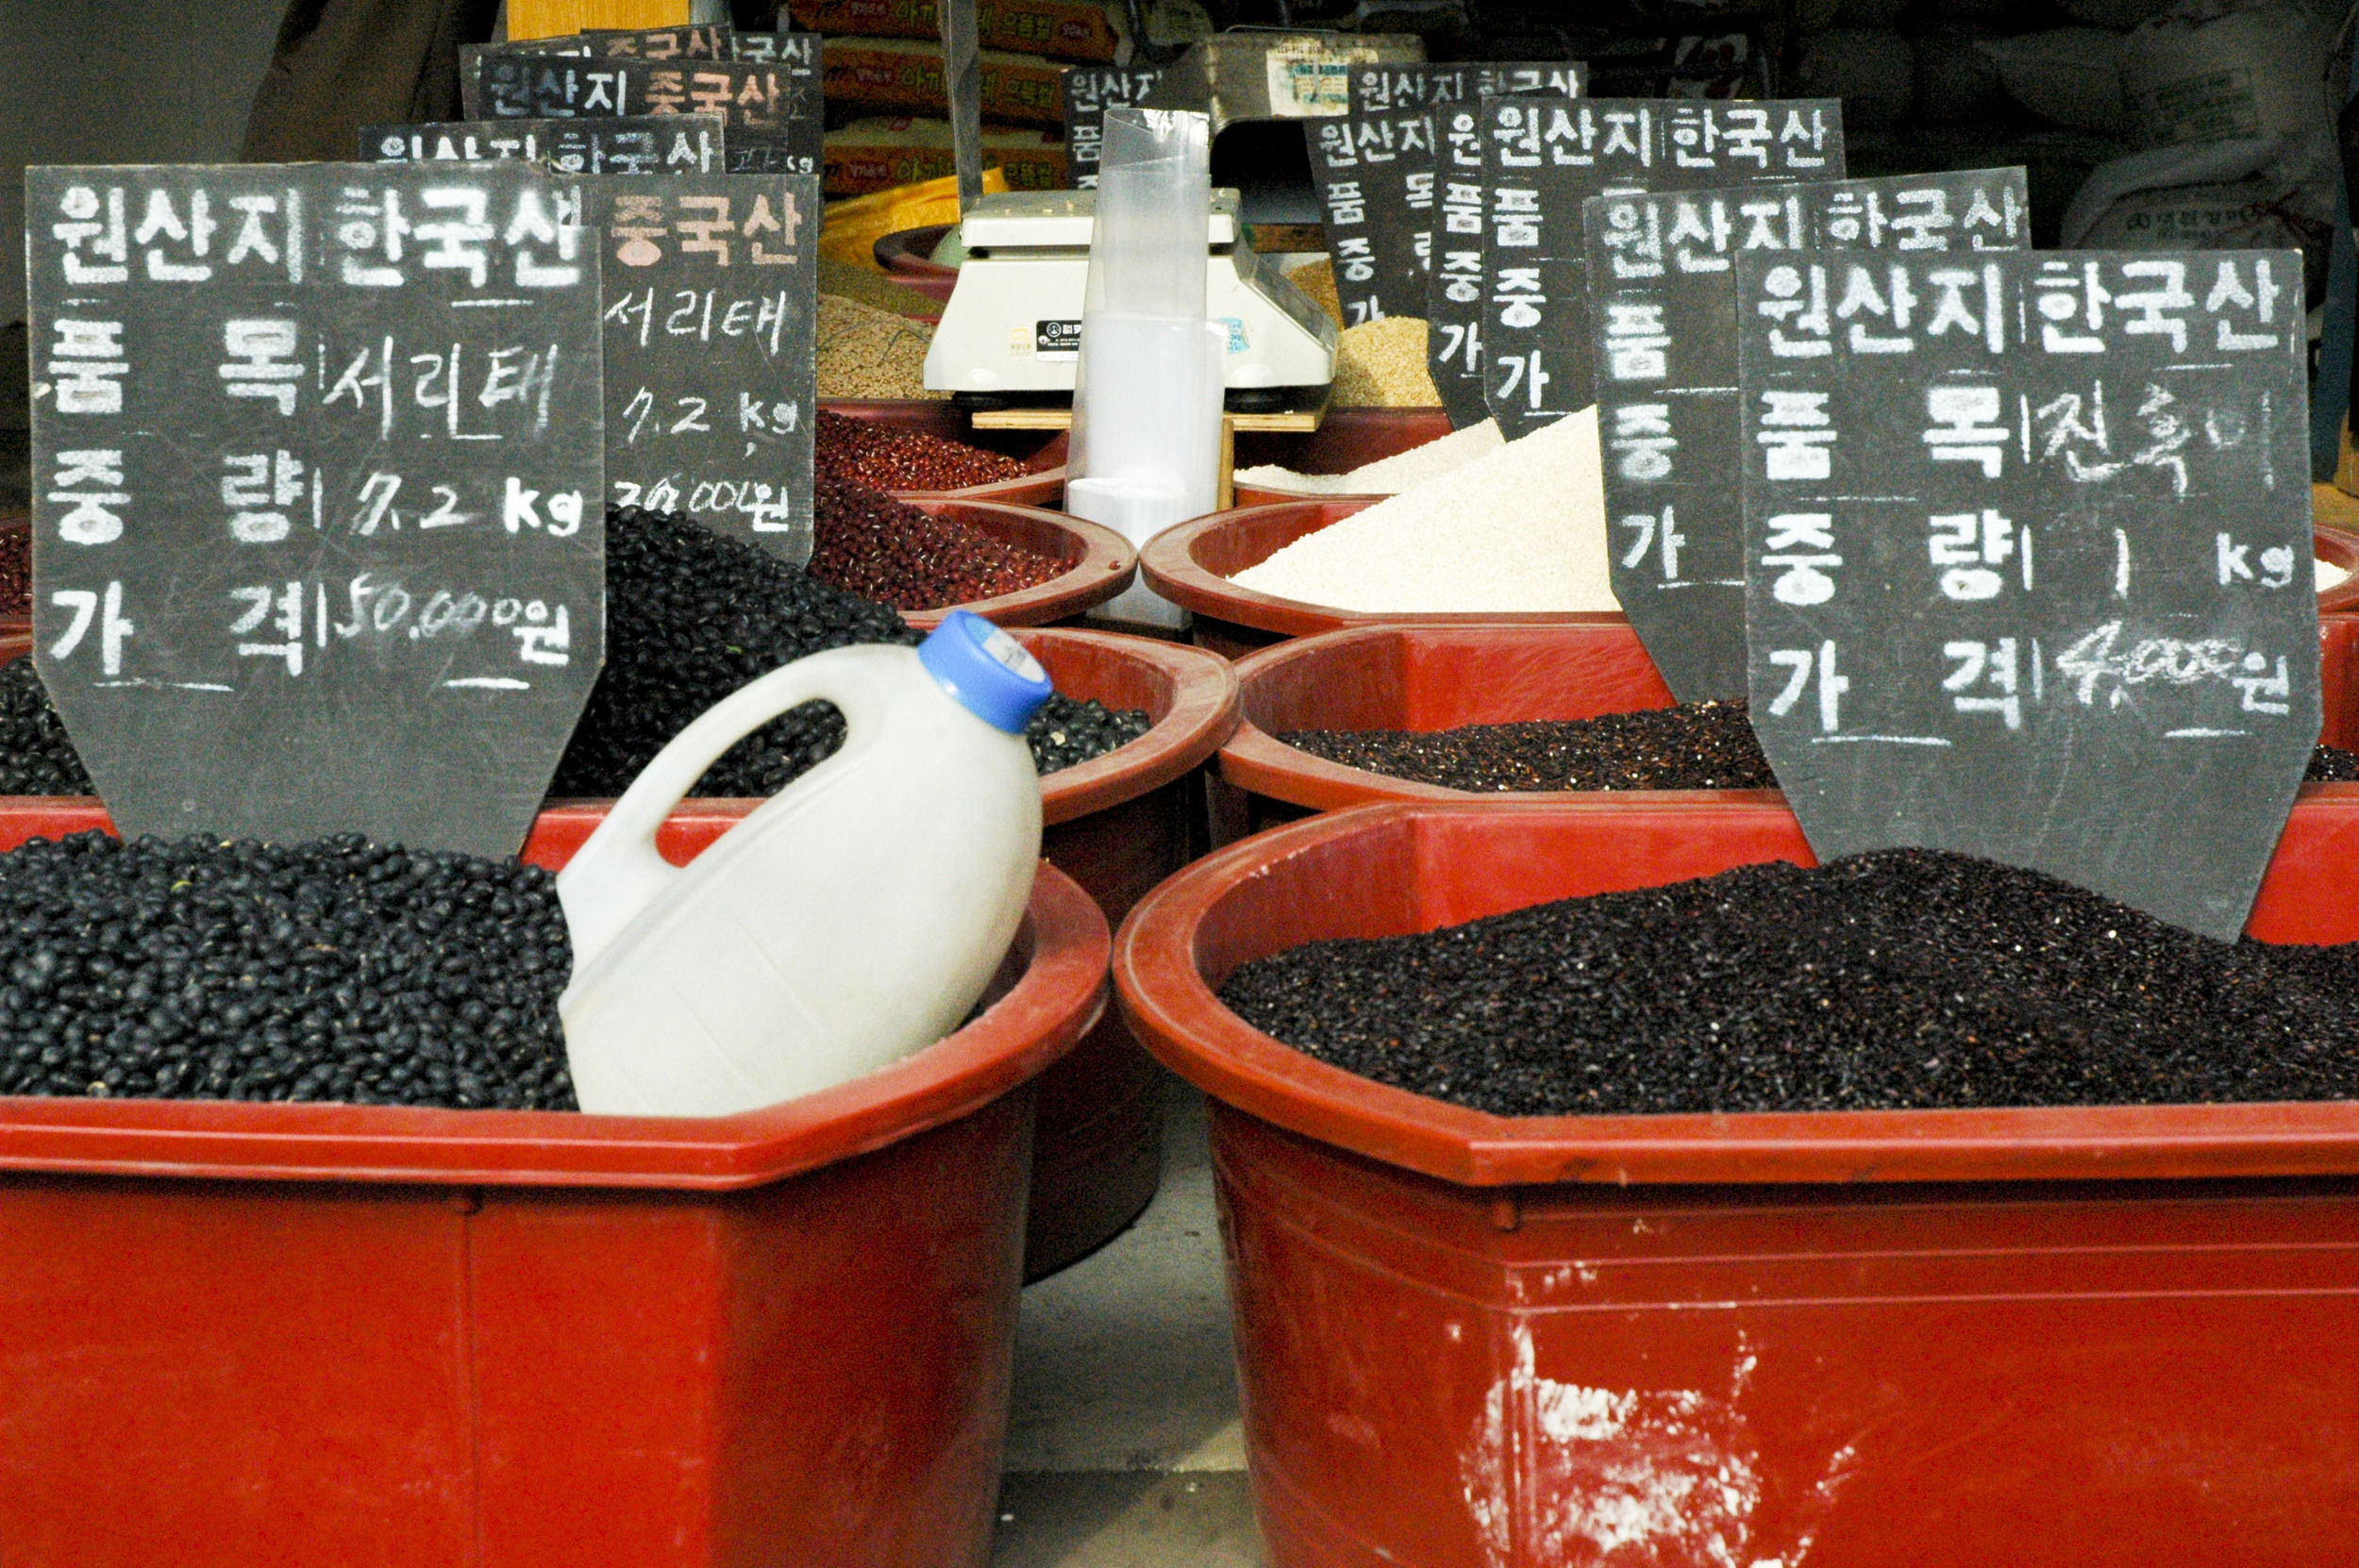 Korea7 Beans for Sale.jpg